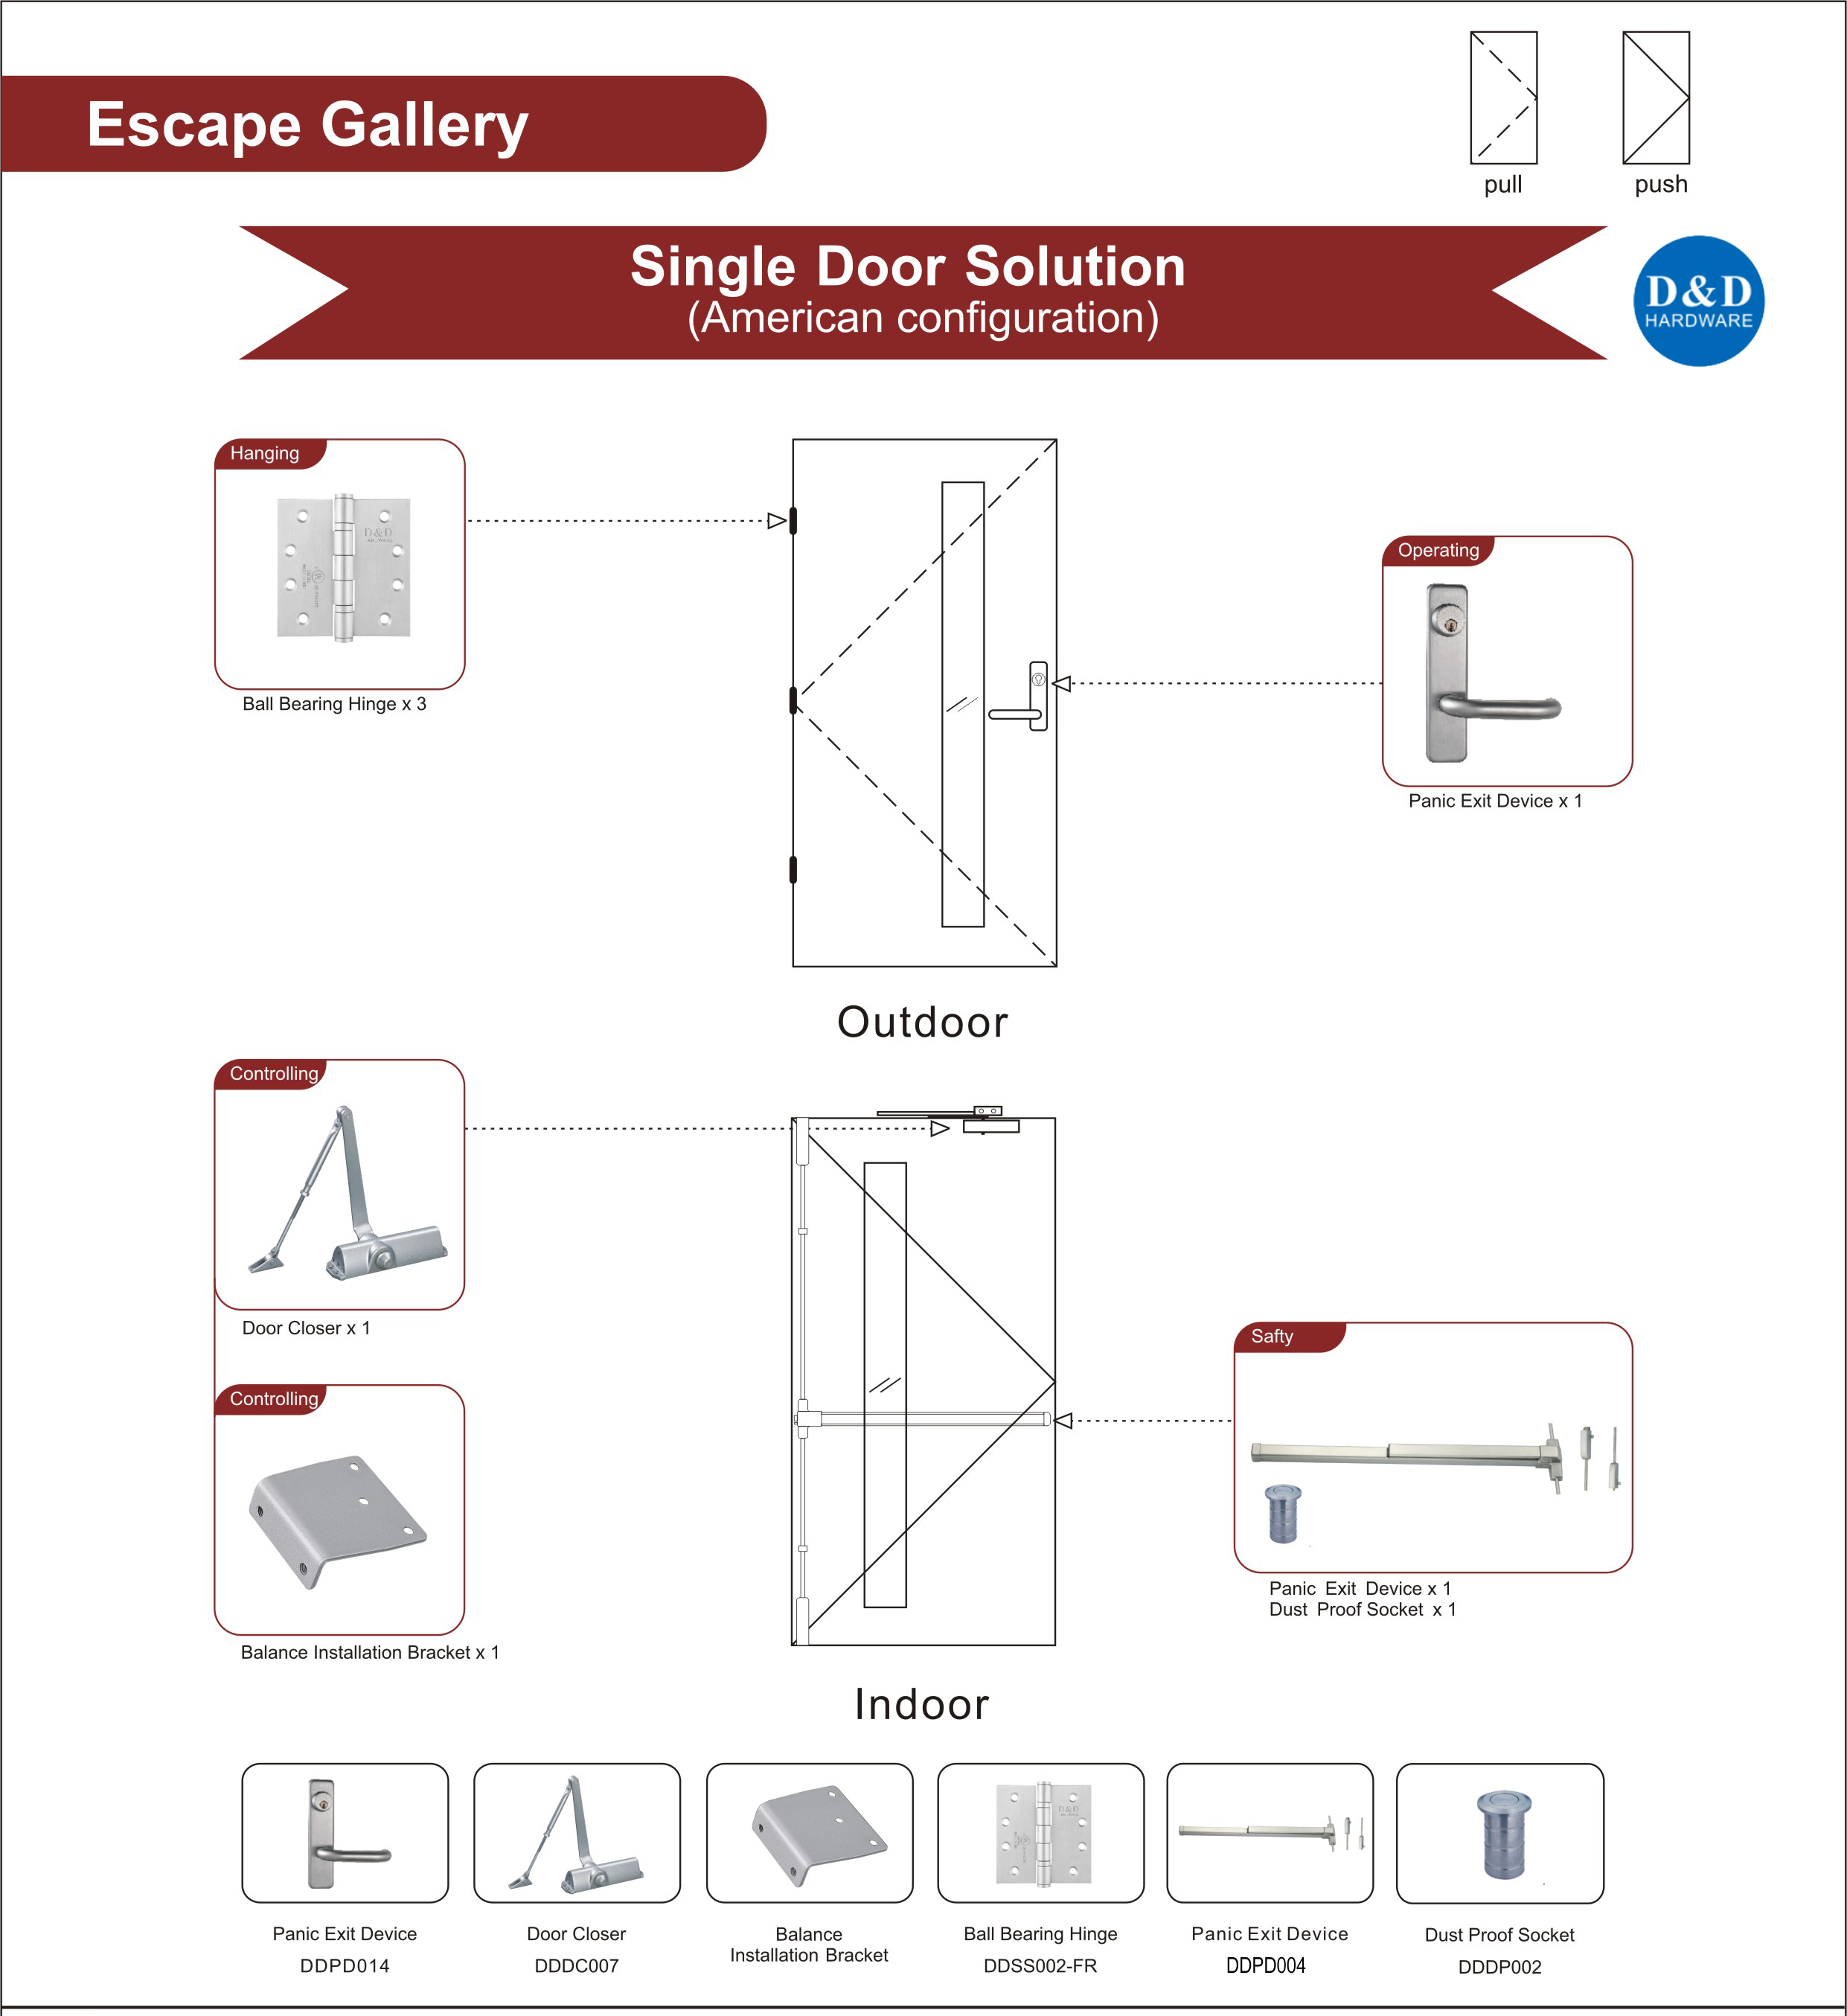 Fire Rated Steel Door Hardware For Escape Gallery Single Door